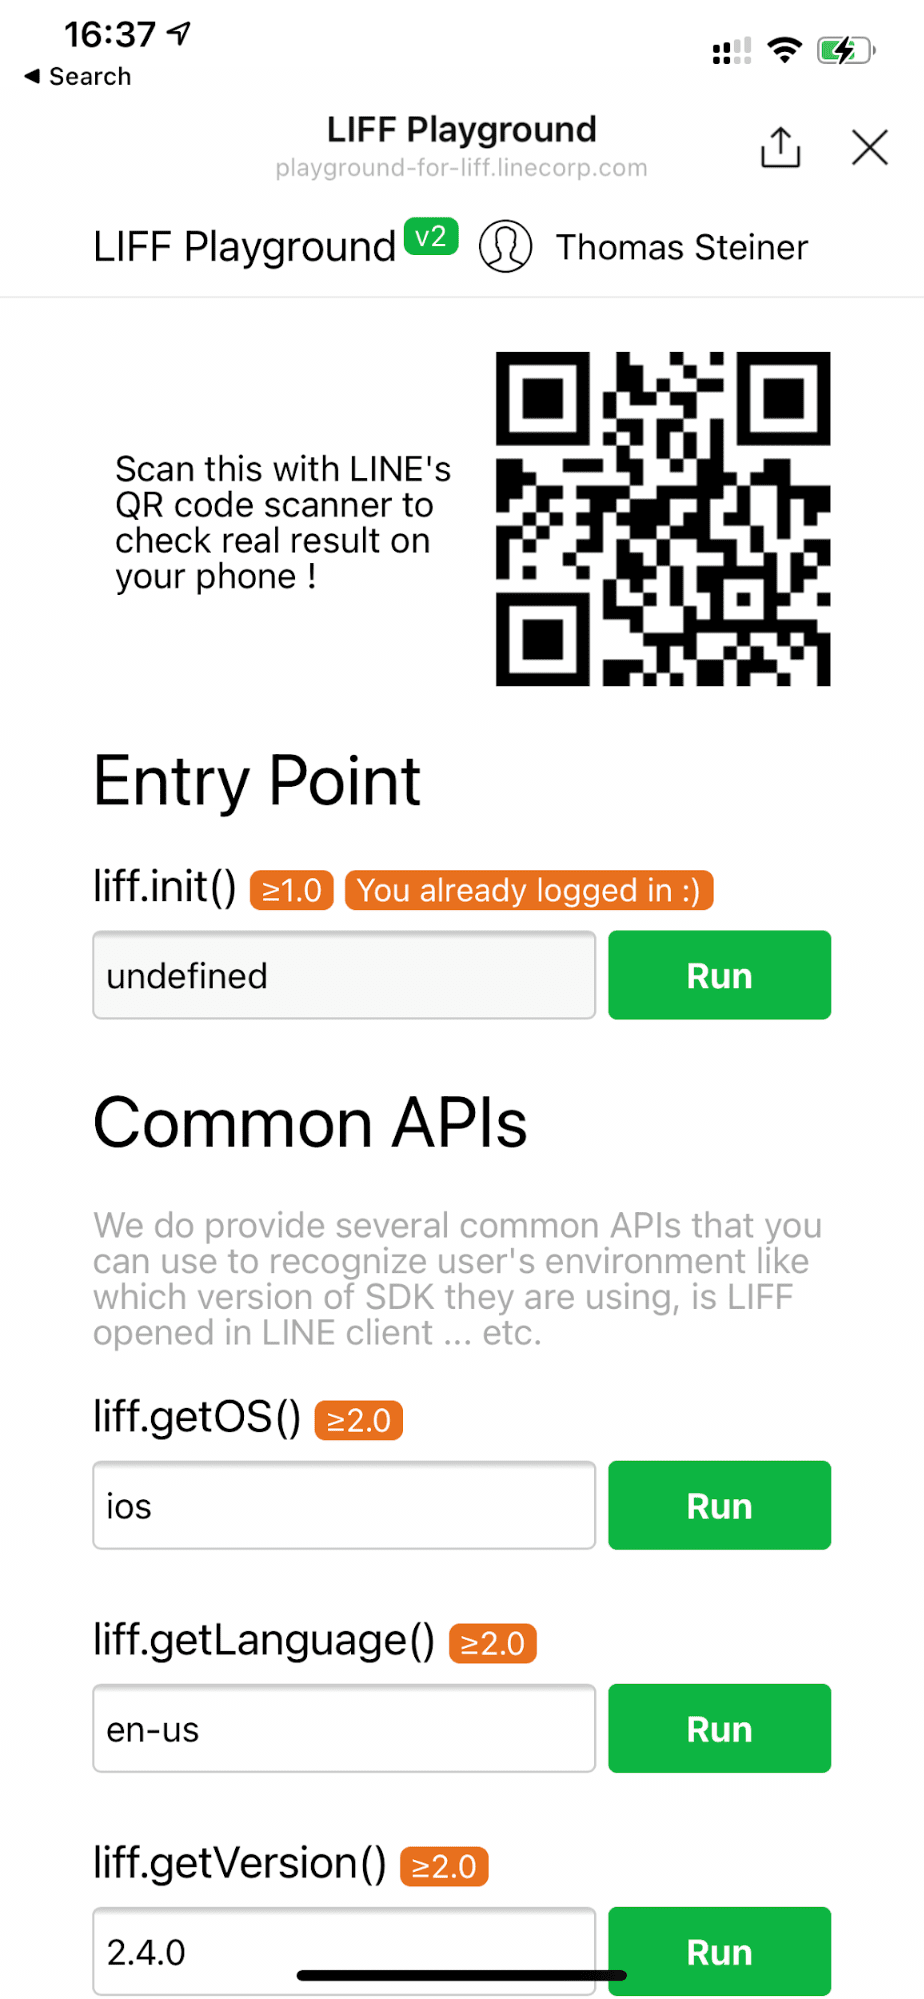 iOS デバイスで実行されている LINE Playground のデモアプリ。「liff.getOS()」から「ios」が返されます。